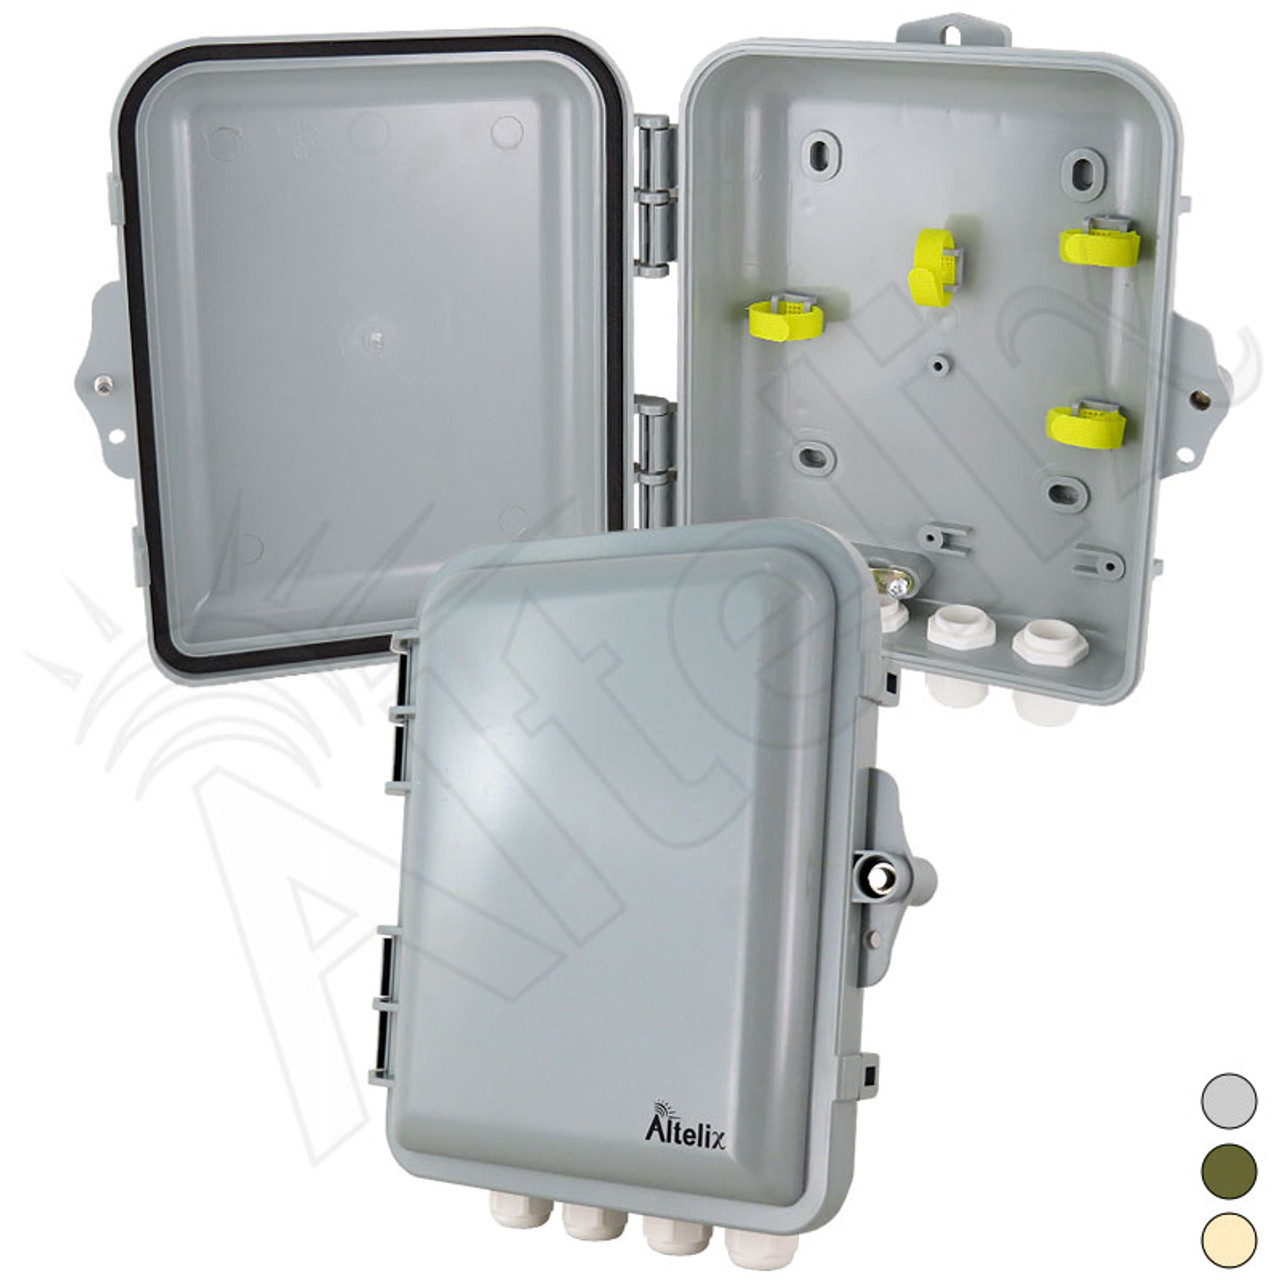 Altelix 9x8x3 IP66 NEMA 4X PC+ABS Weatherproof Utility Box with